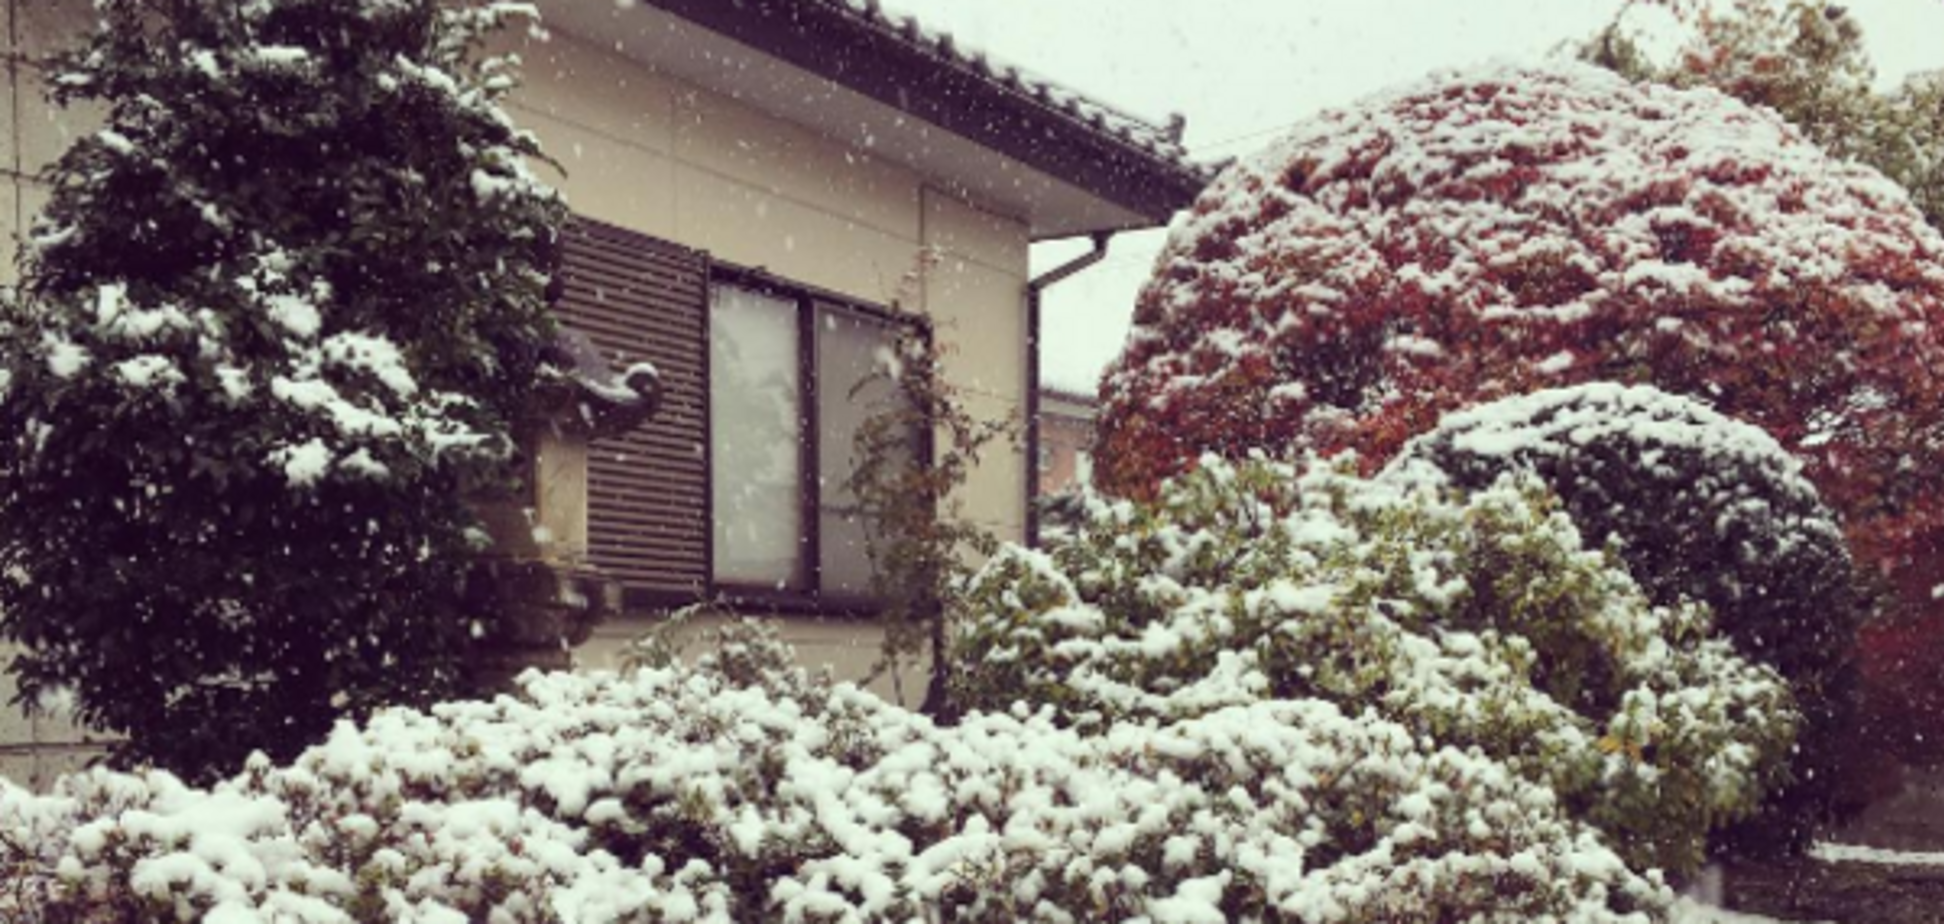 Снег в Токио